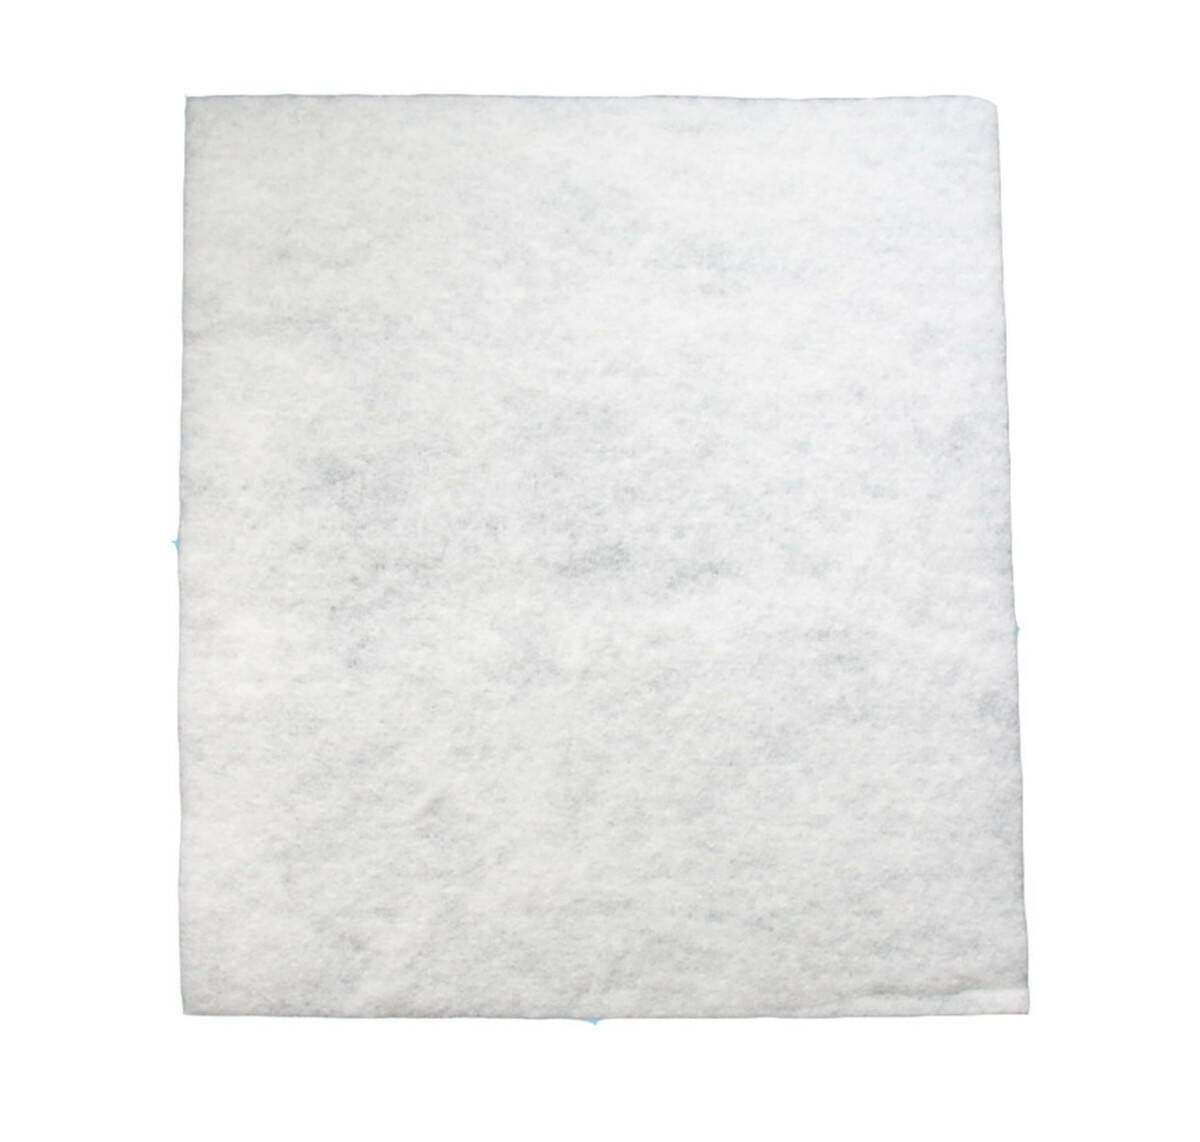 FILTR DO OKAPU 50x60 biały (Zdjęcie 1)